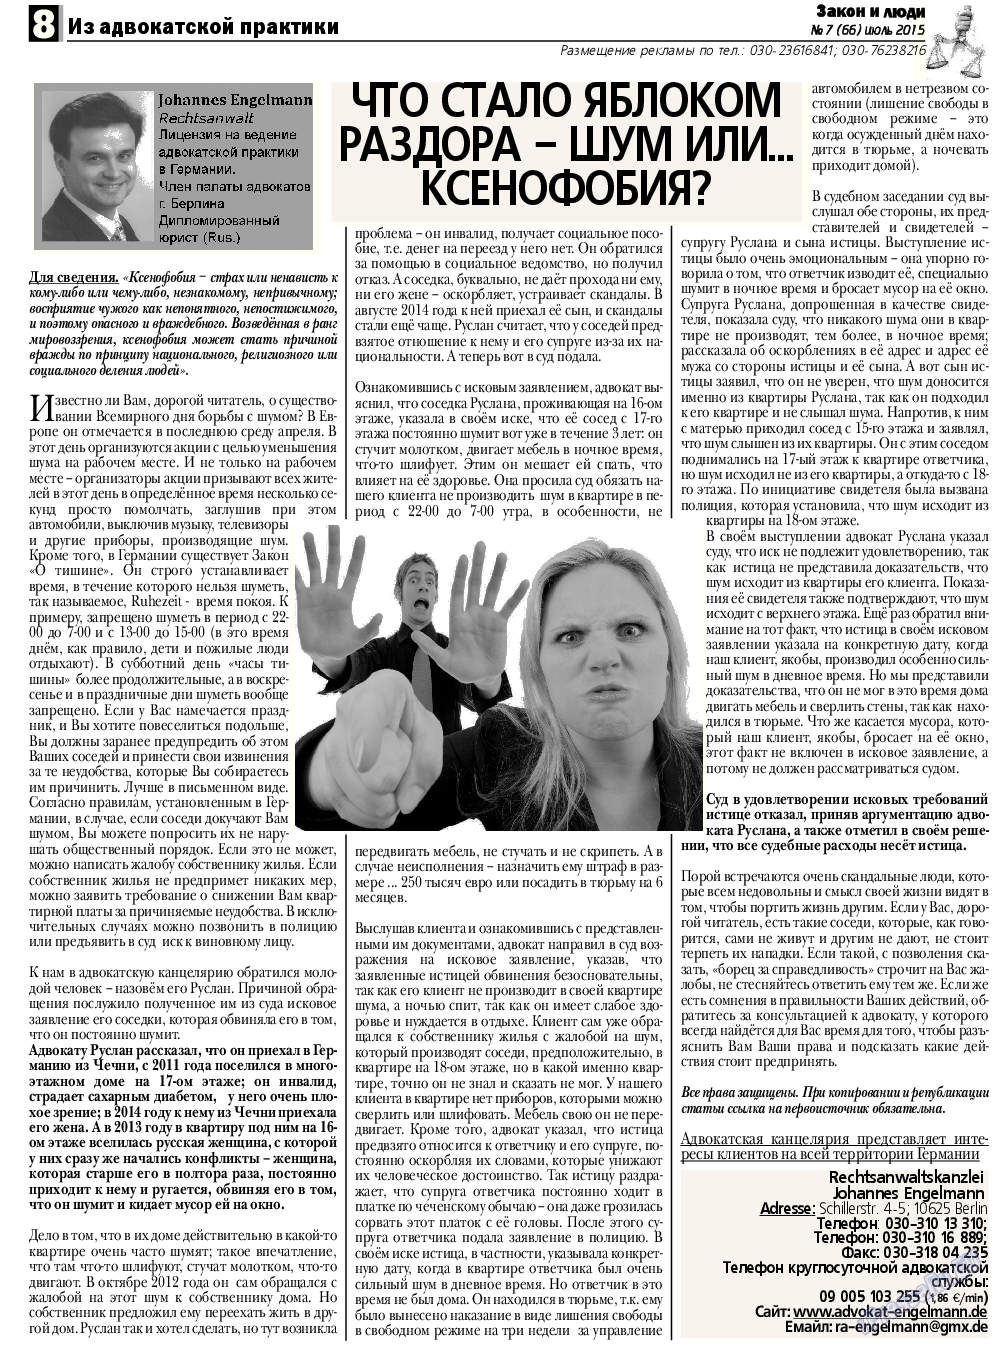 Закон и люди, газета. 2015 №7 стр.8